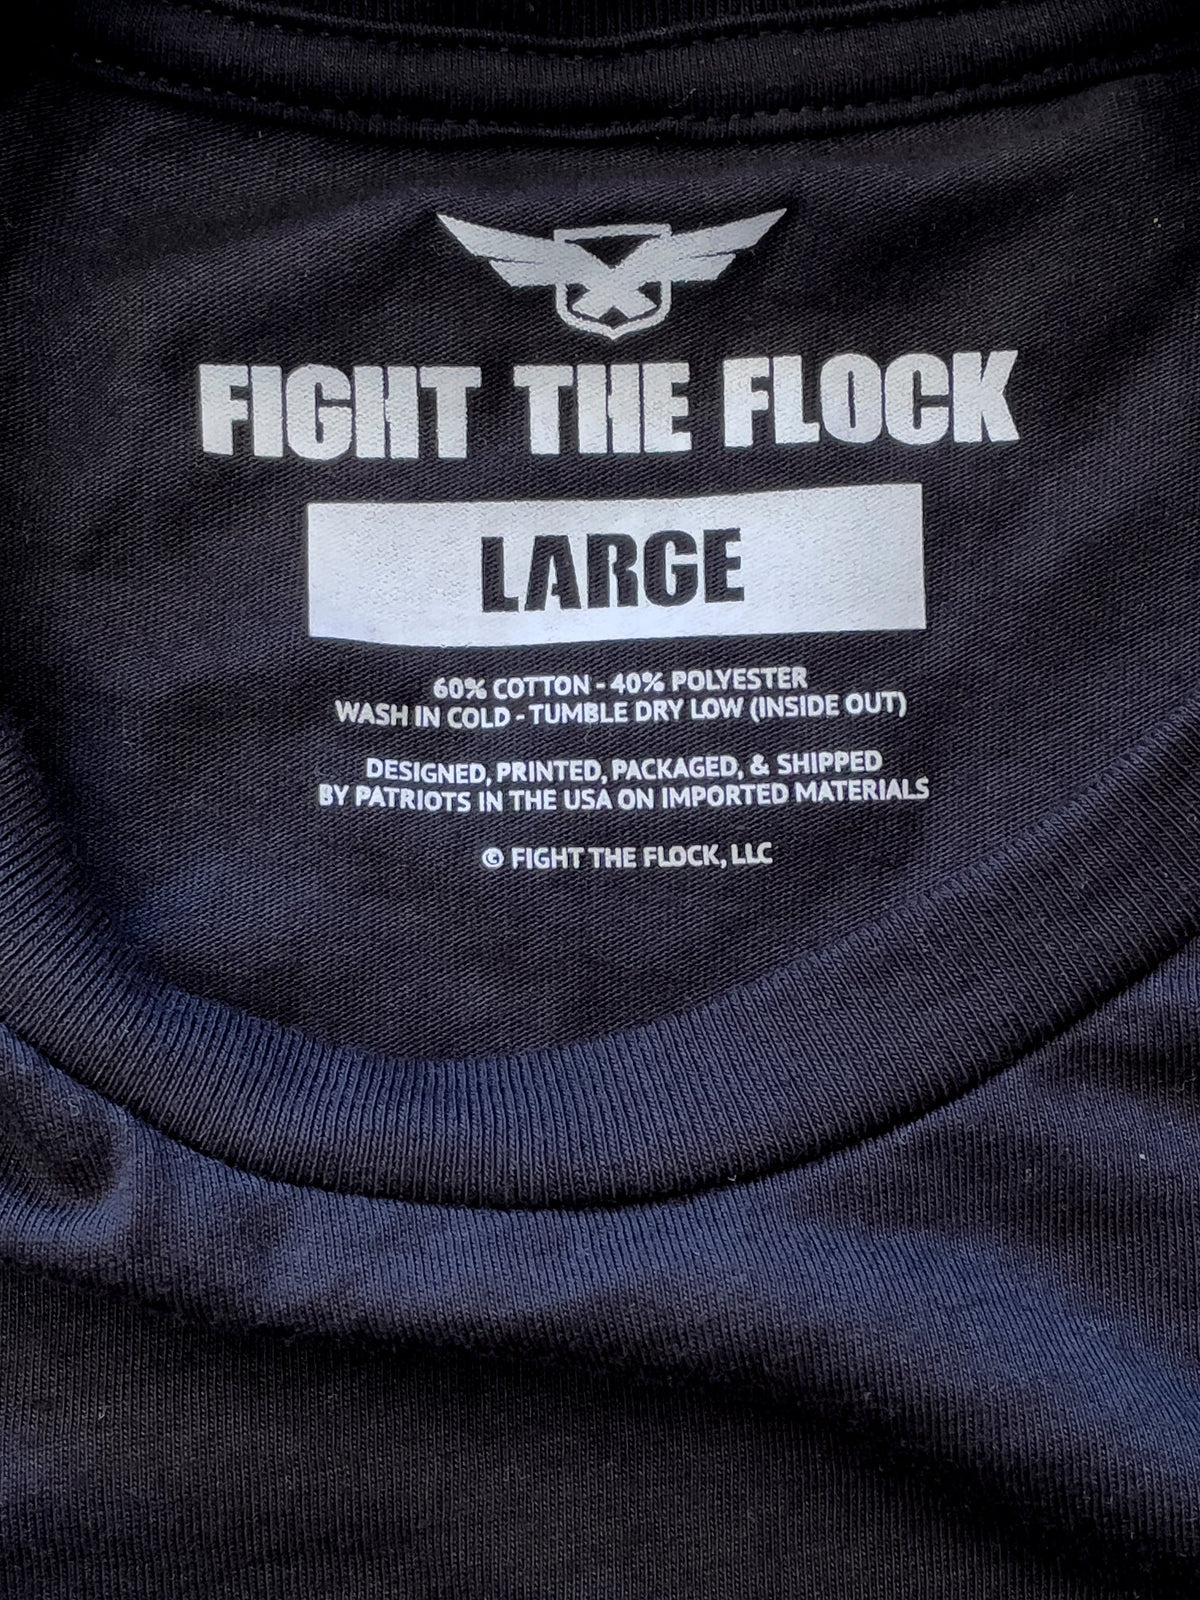 PROTECTOR Mens Crewneck T-Shirt